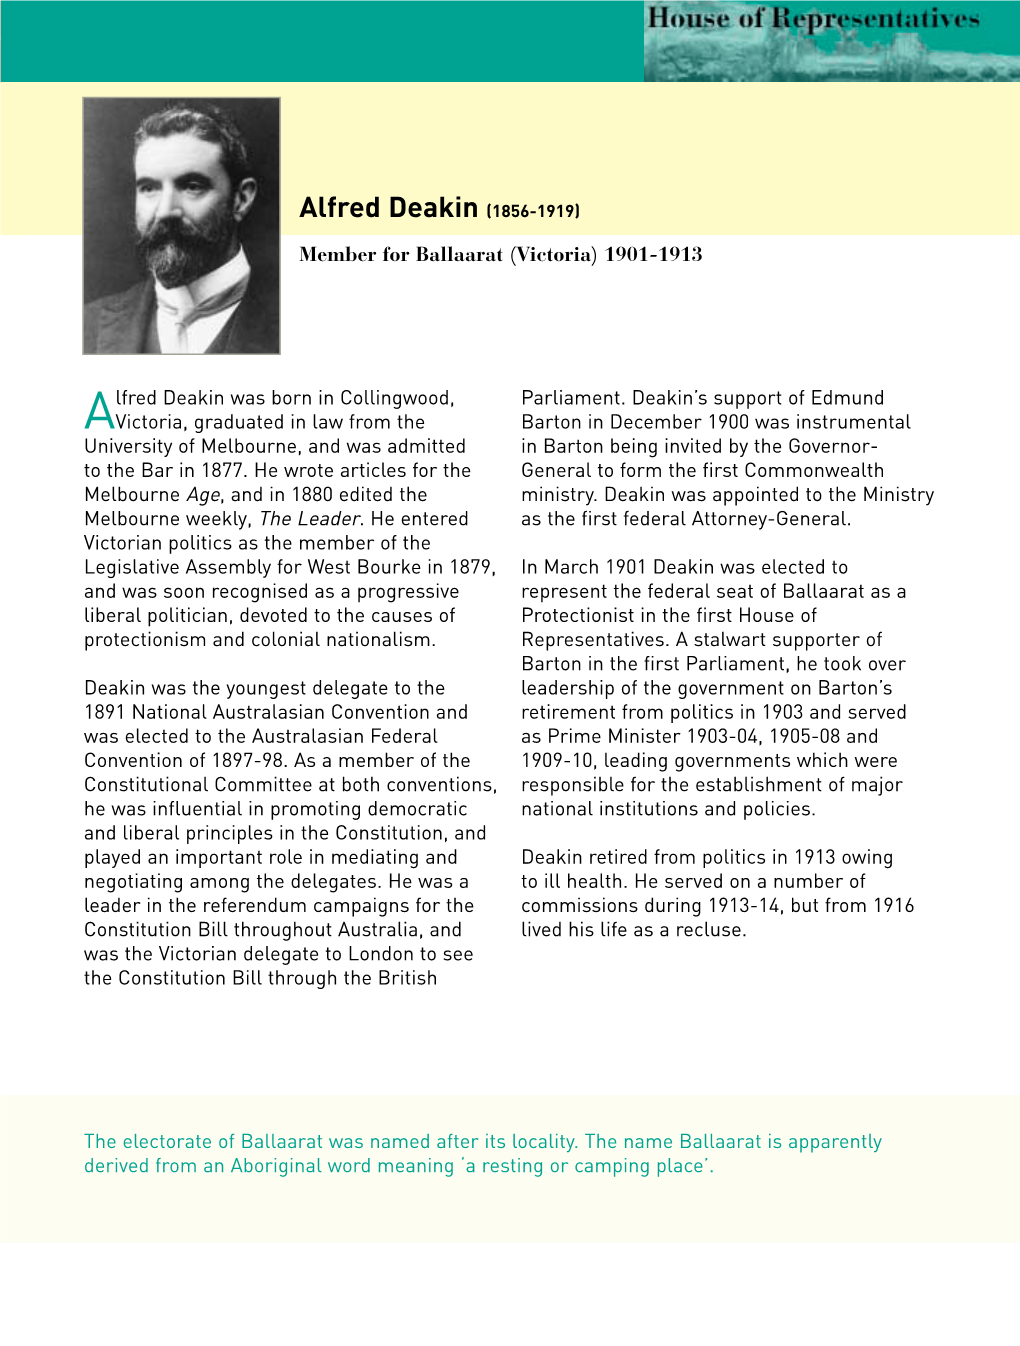 Biography Alfred Deakin